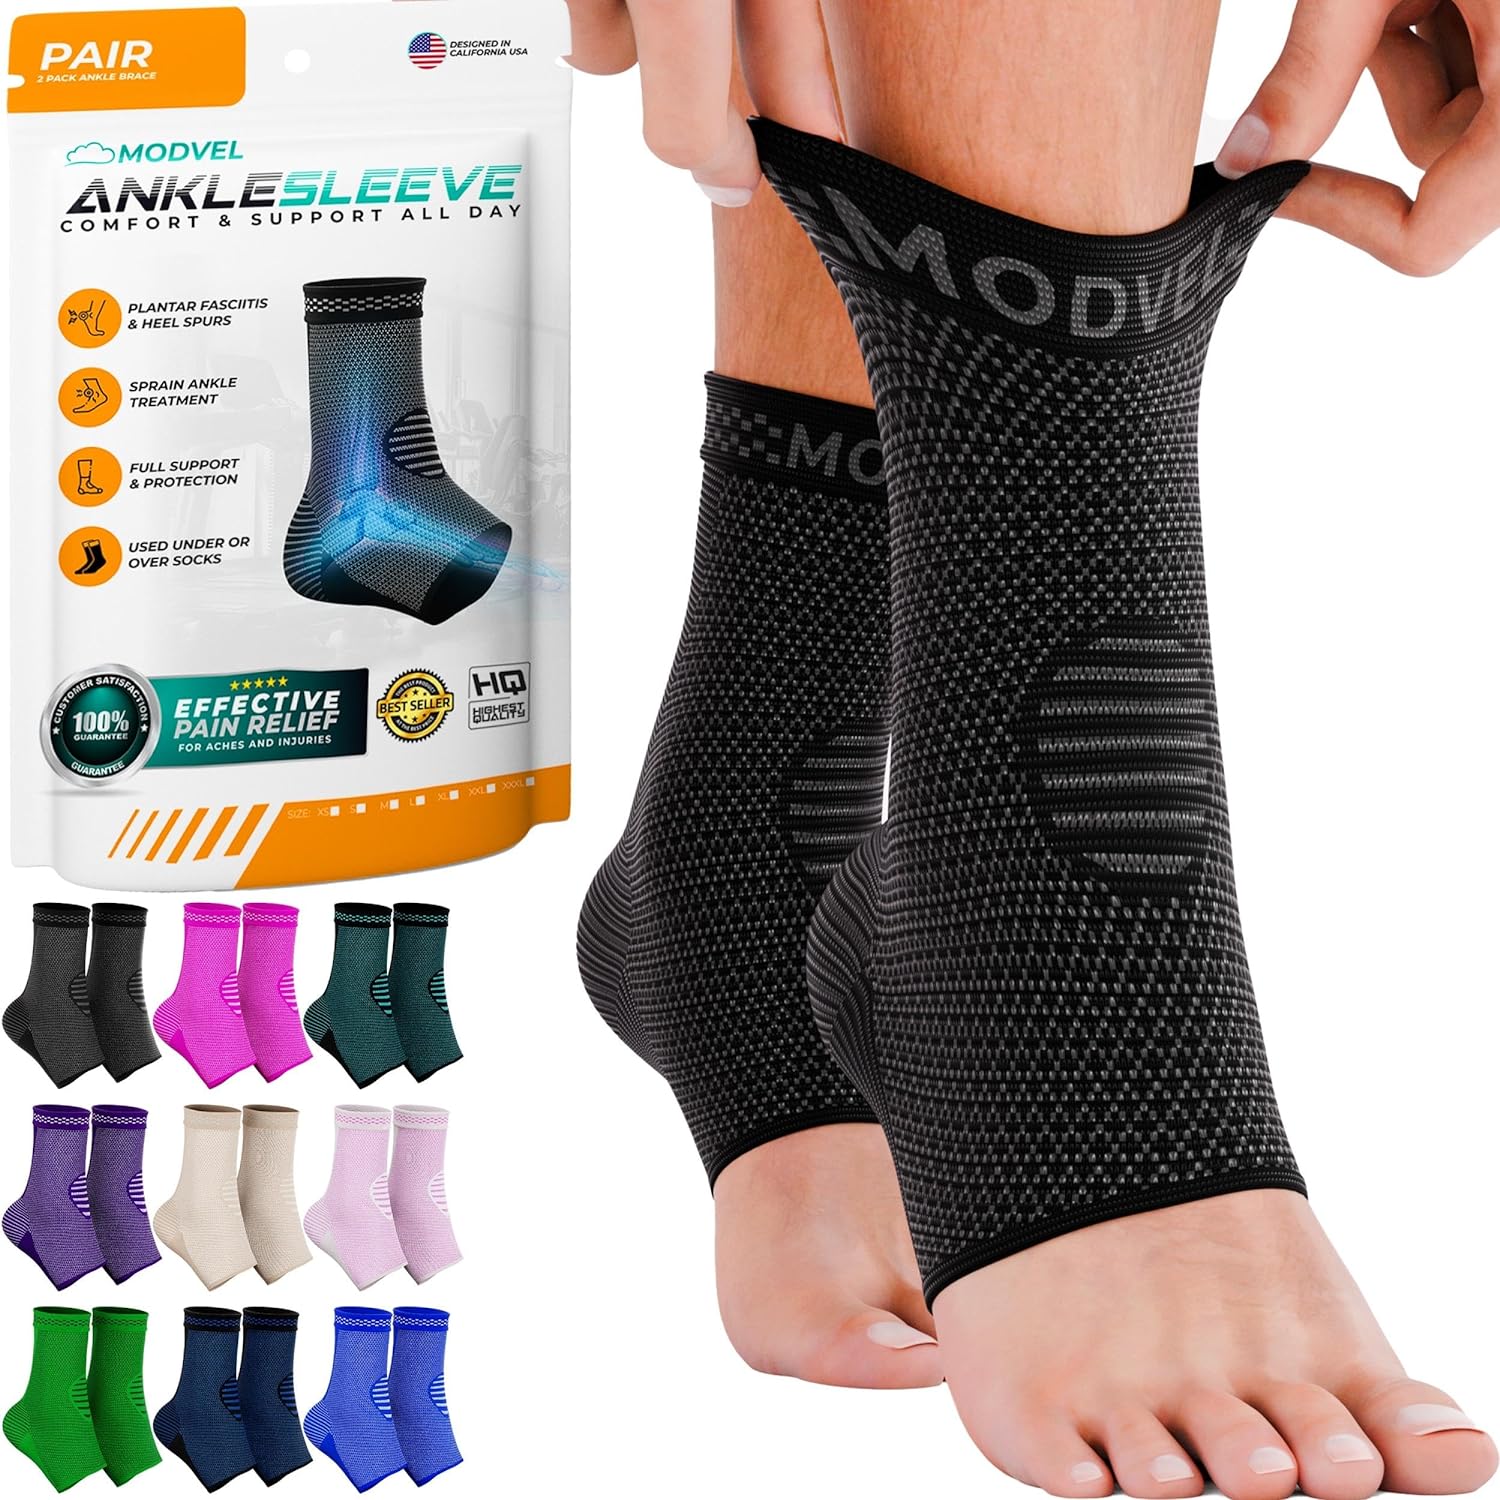 2-Pack Modvel Ankle Brace for Women & Men: From $10 @ Amazon